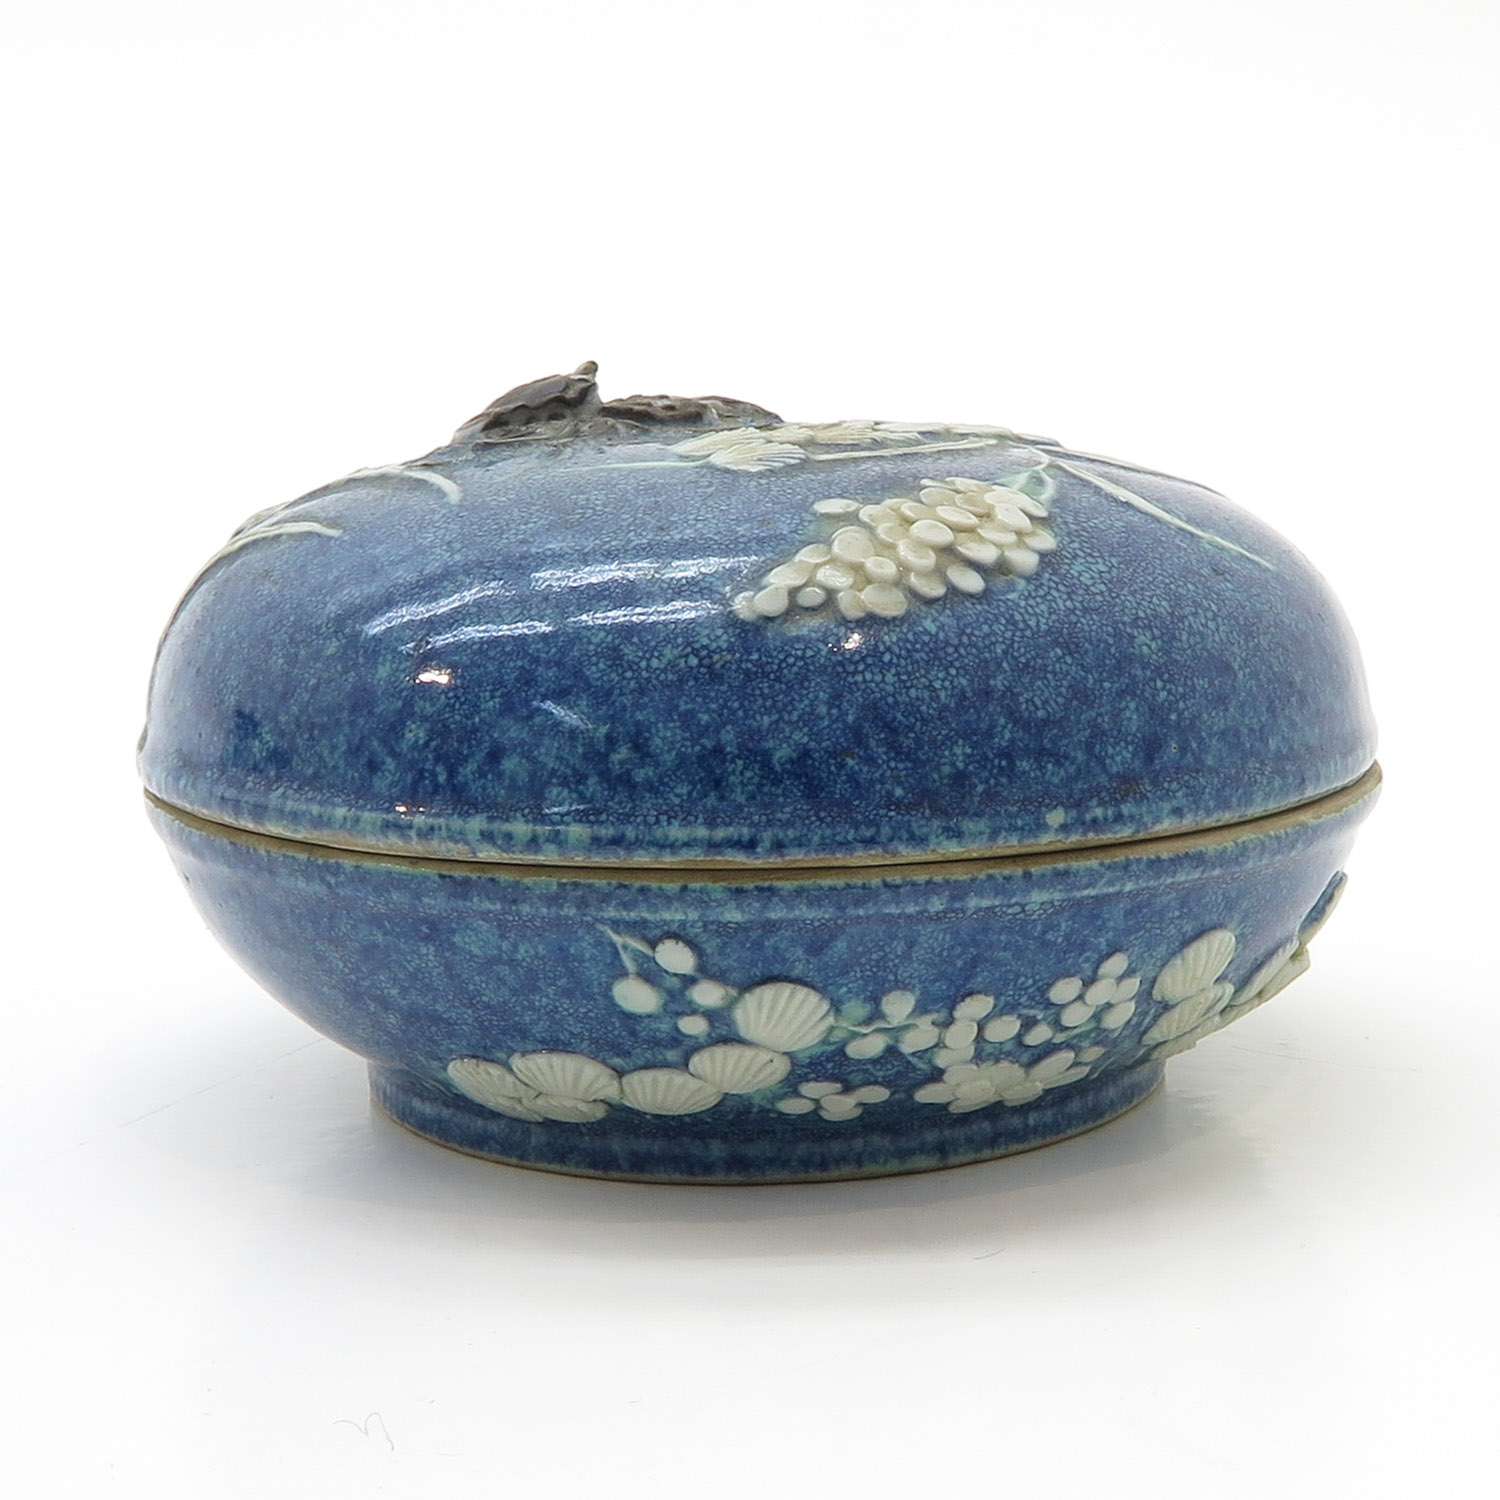 China Porcelain Robins Egg Covered Jar - Image 2 of 6